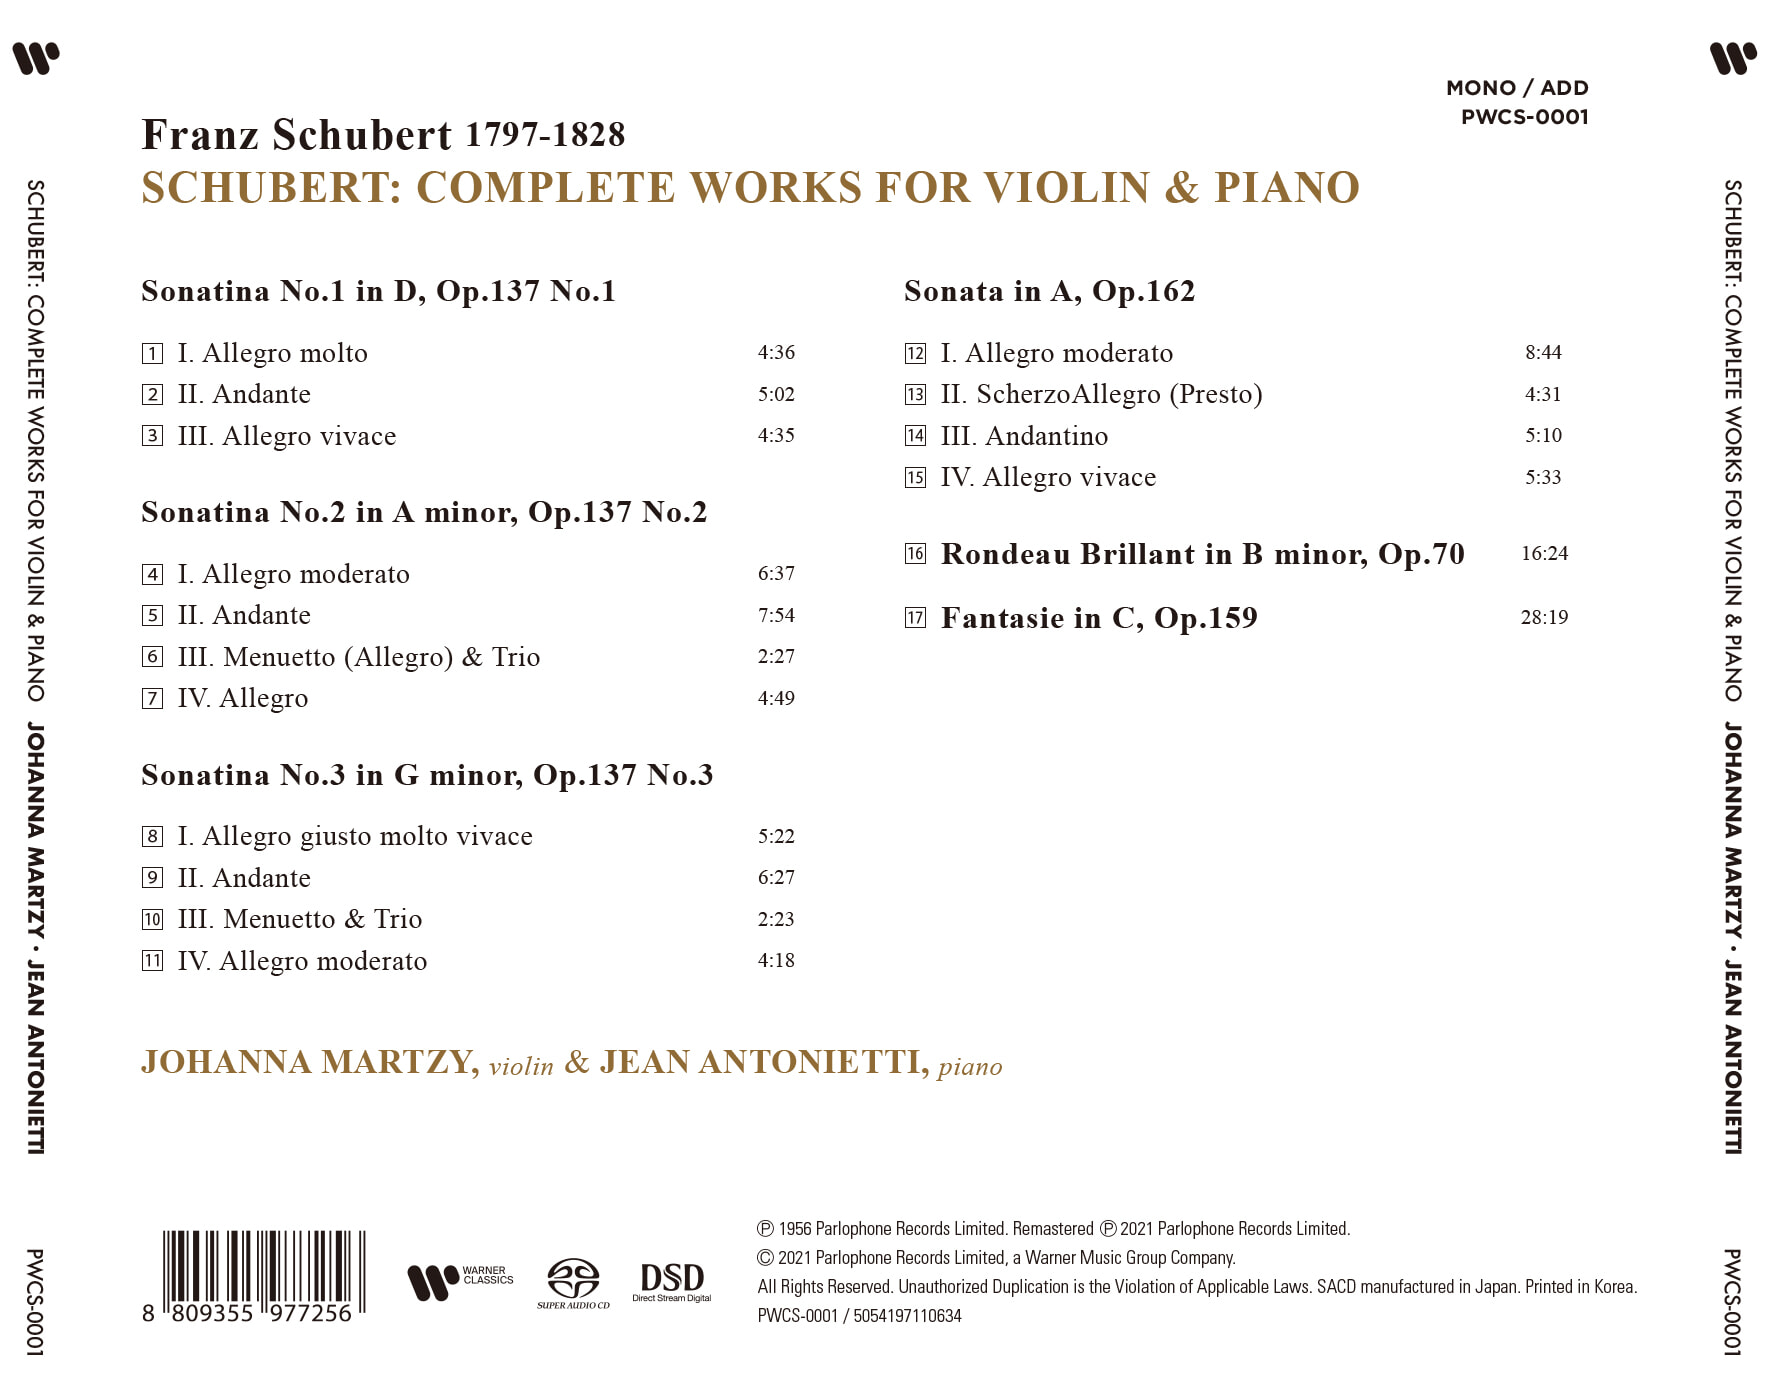 Johanna Martzy 슈베르트: 바이올린과 피아노를 위한 작품 전집 - 요한나 마르치 (Schubert: Complete Works for Violin & Piano) 